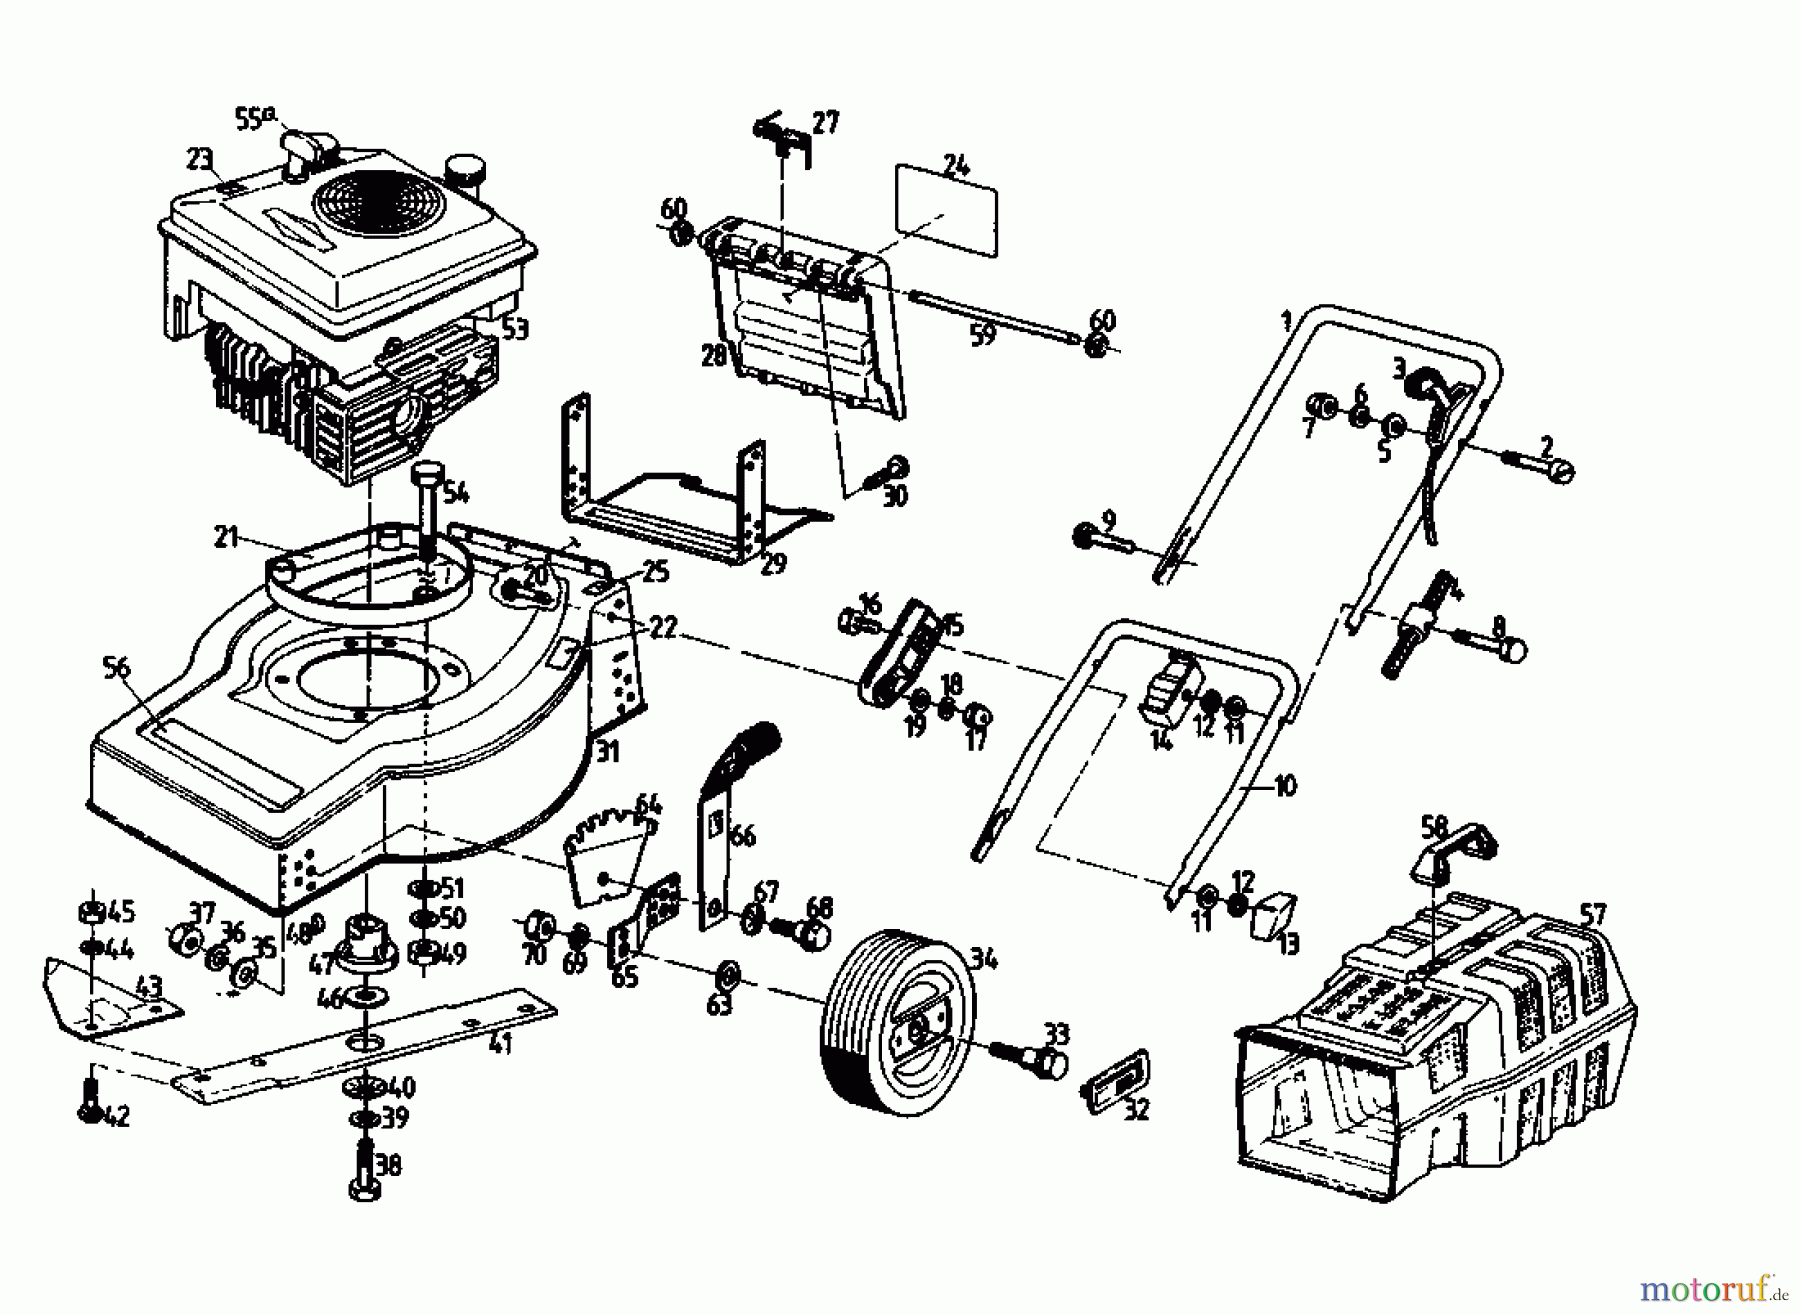  Gutbrod Tondeuse thermique TURBO B-Q 02893.03  (1988) Machine de base